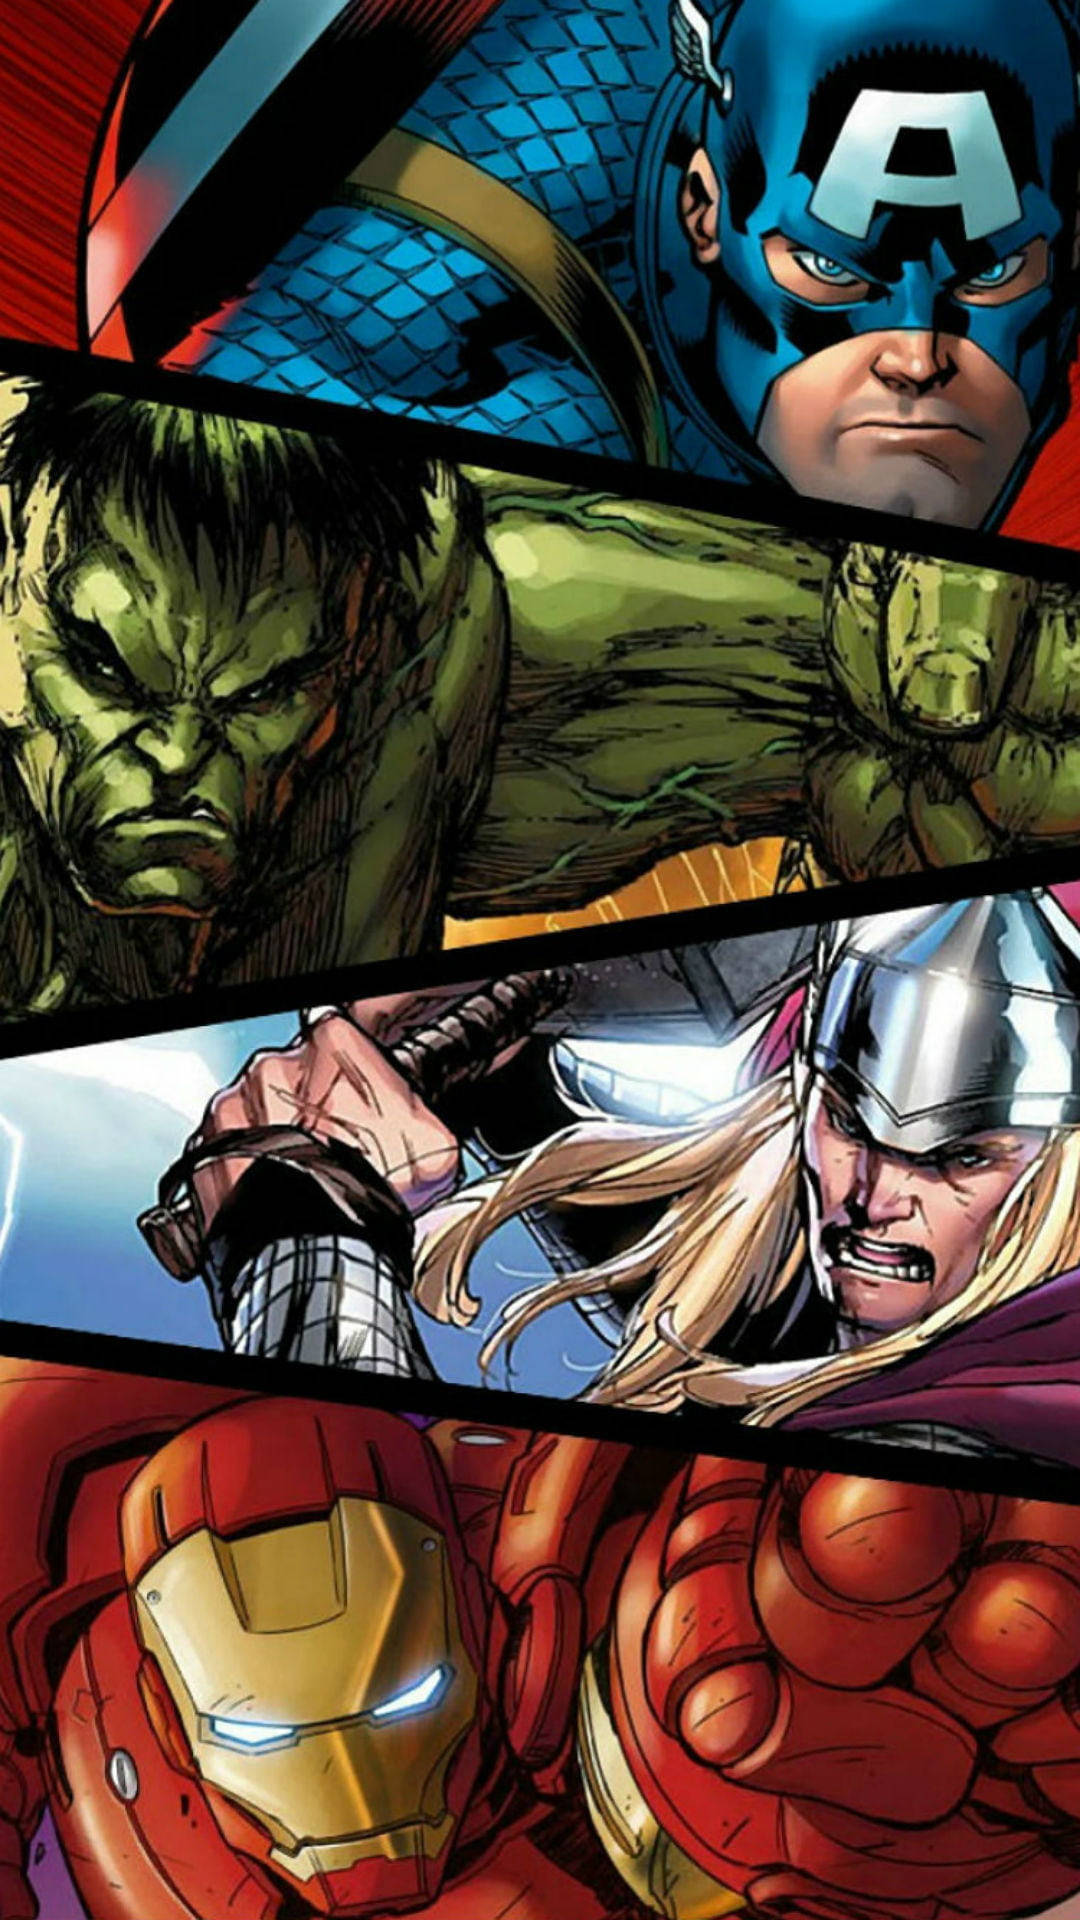 Migliorimmagine Dei Fumetti Degli Avengers Sfondo